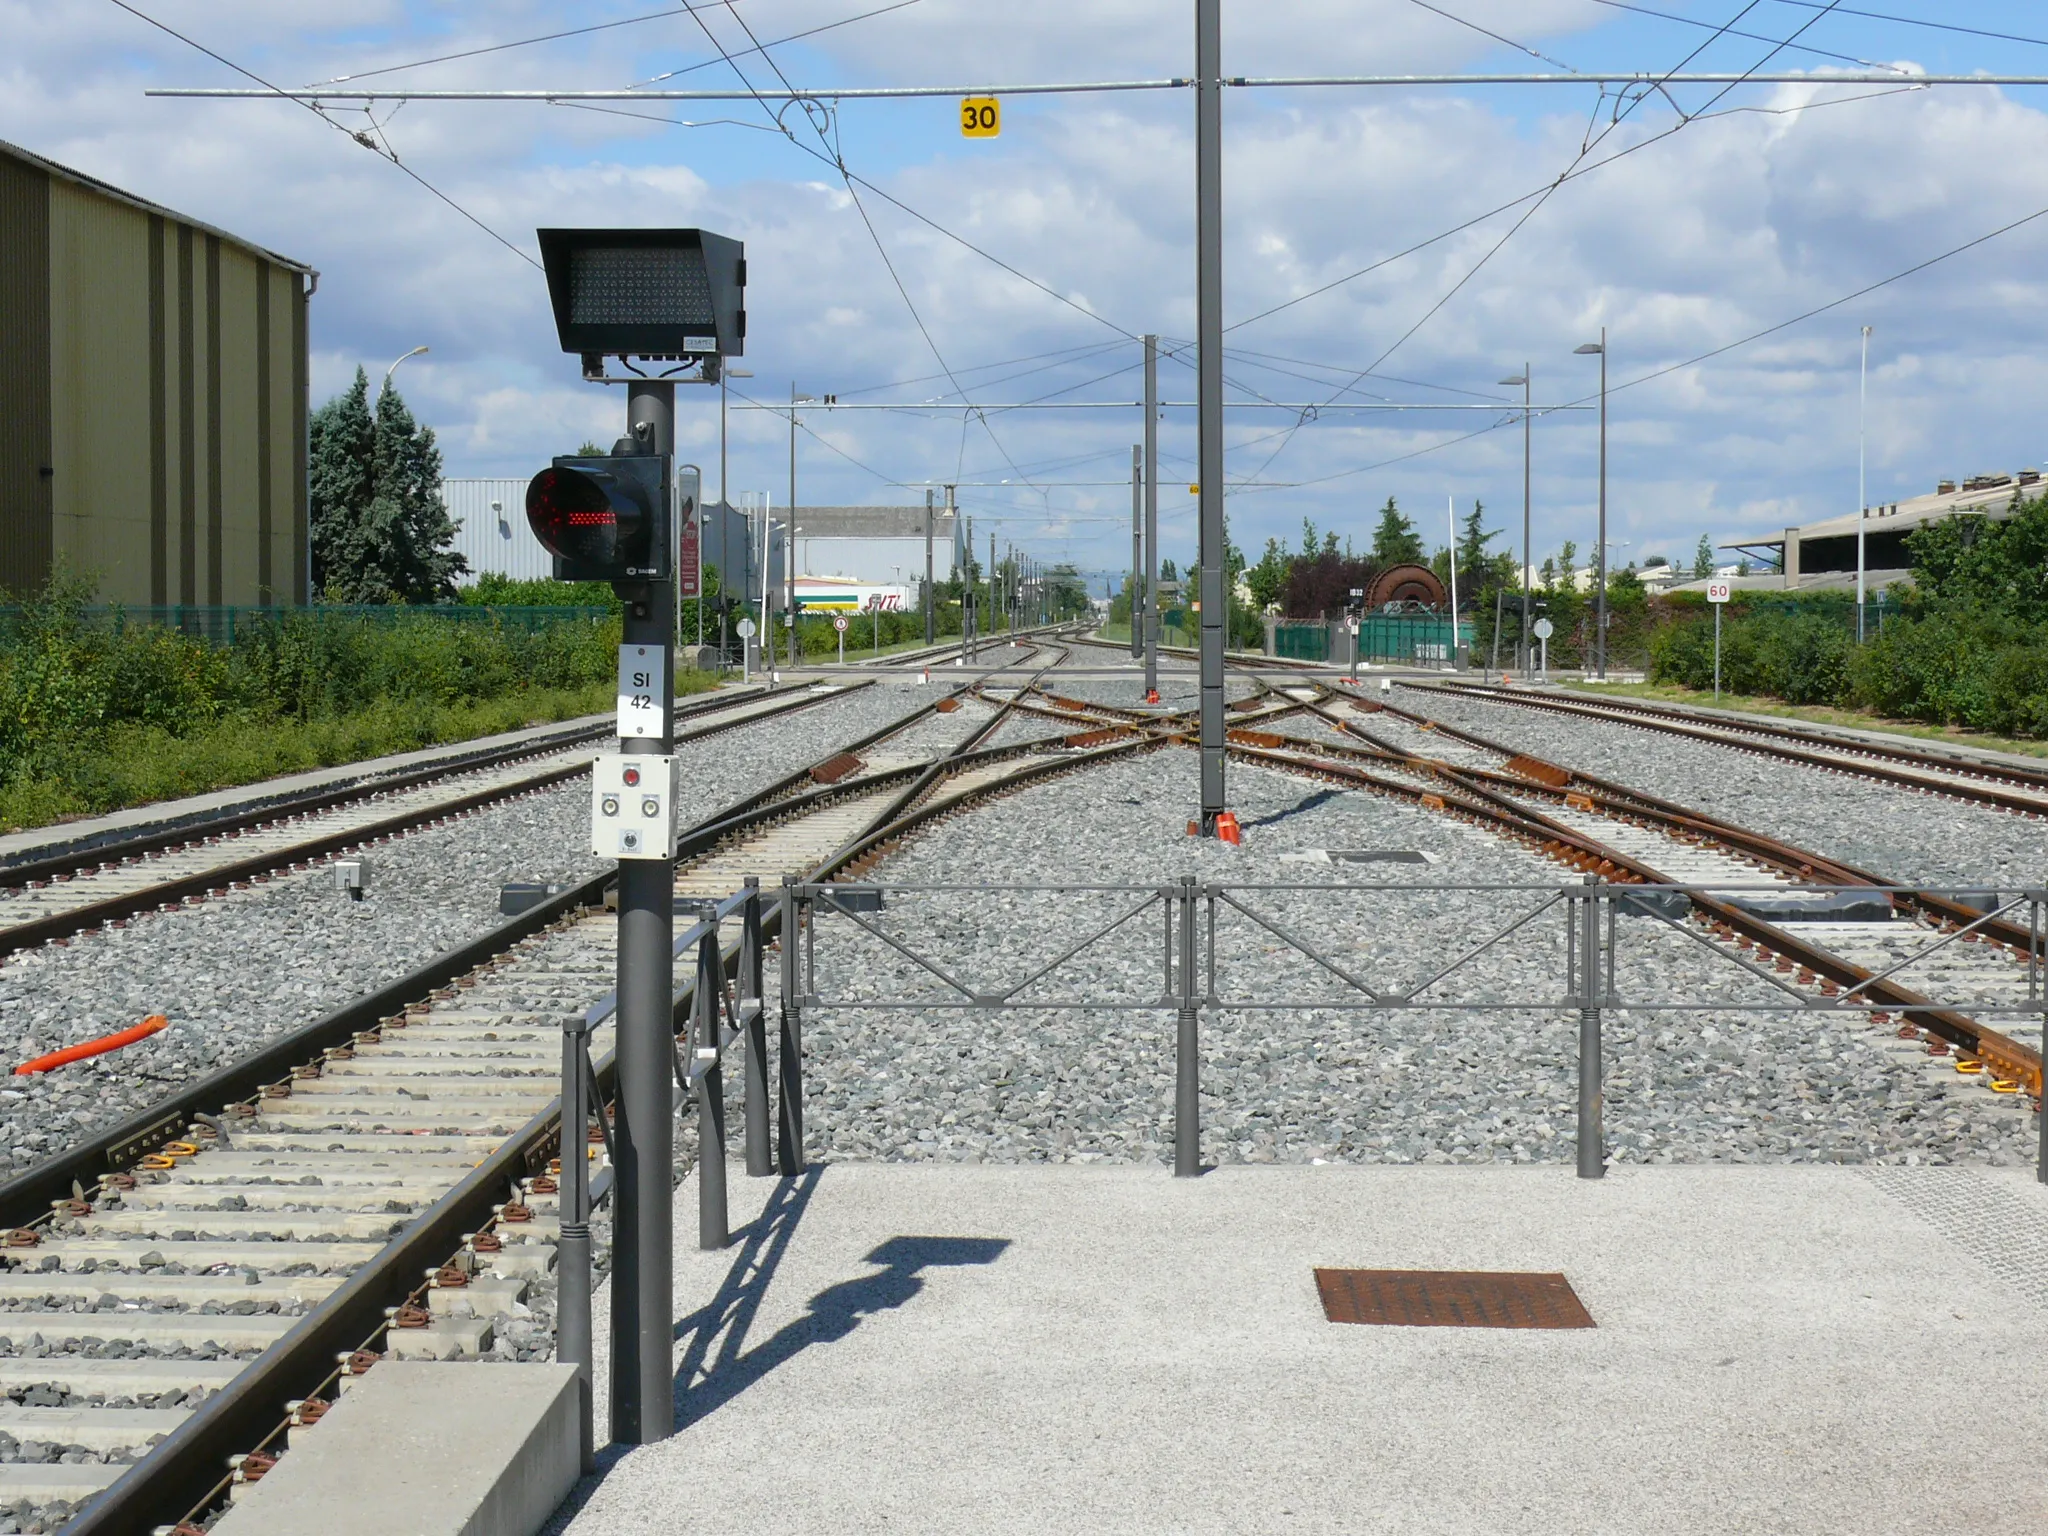 Photo showing: Tramway de Lyon — T3 et Rhônexpress : Appareils de voie de l'avant gare de Meyzieu. Les deux voies centrales constituent le terminus de la ligne T3, et les deux voies extérieures serviront au passage des rames de Rhônexpress, la liaison rail-aéroport desservant l'aéroport de Lyon Saint-Exupéry. La bretelle double visible au premier plan vient d'être installée, dans le cadre des travaux de mise en service de Rhônexpress. En effet, depuis la mise en service de T3, seule la voie à gauche du quai était utilisée par T3 en service commercial.